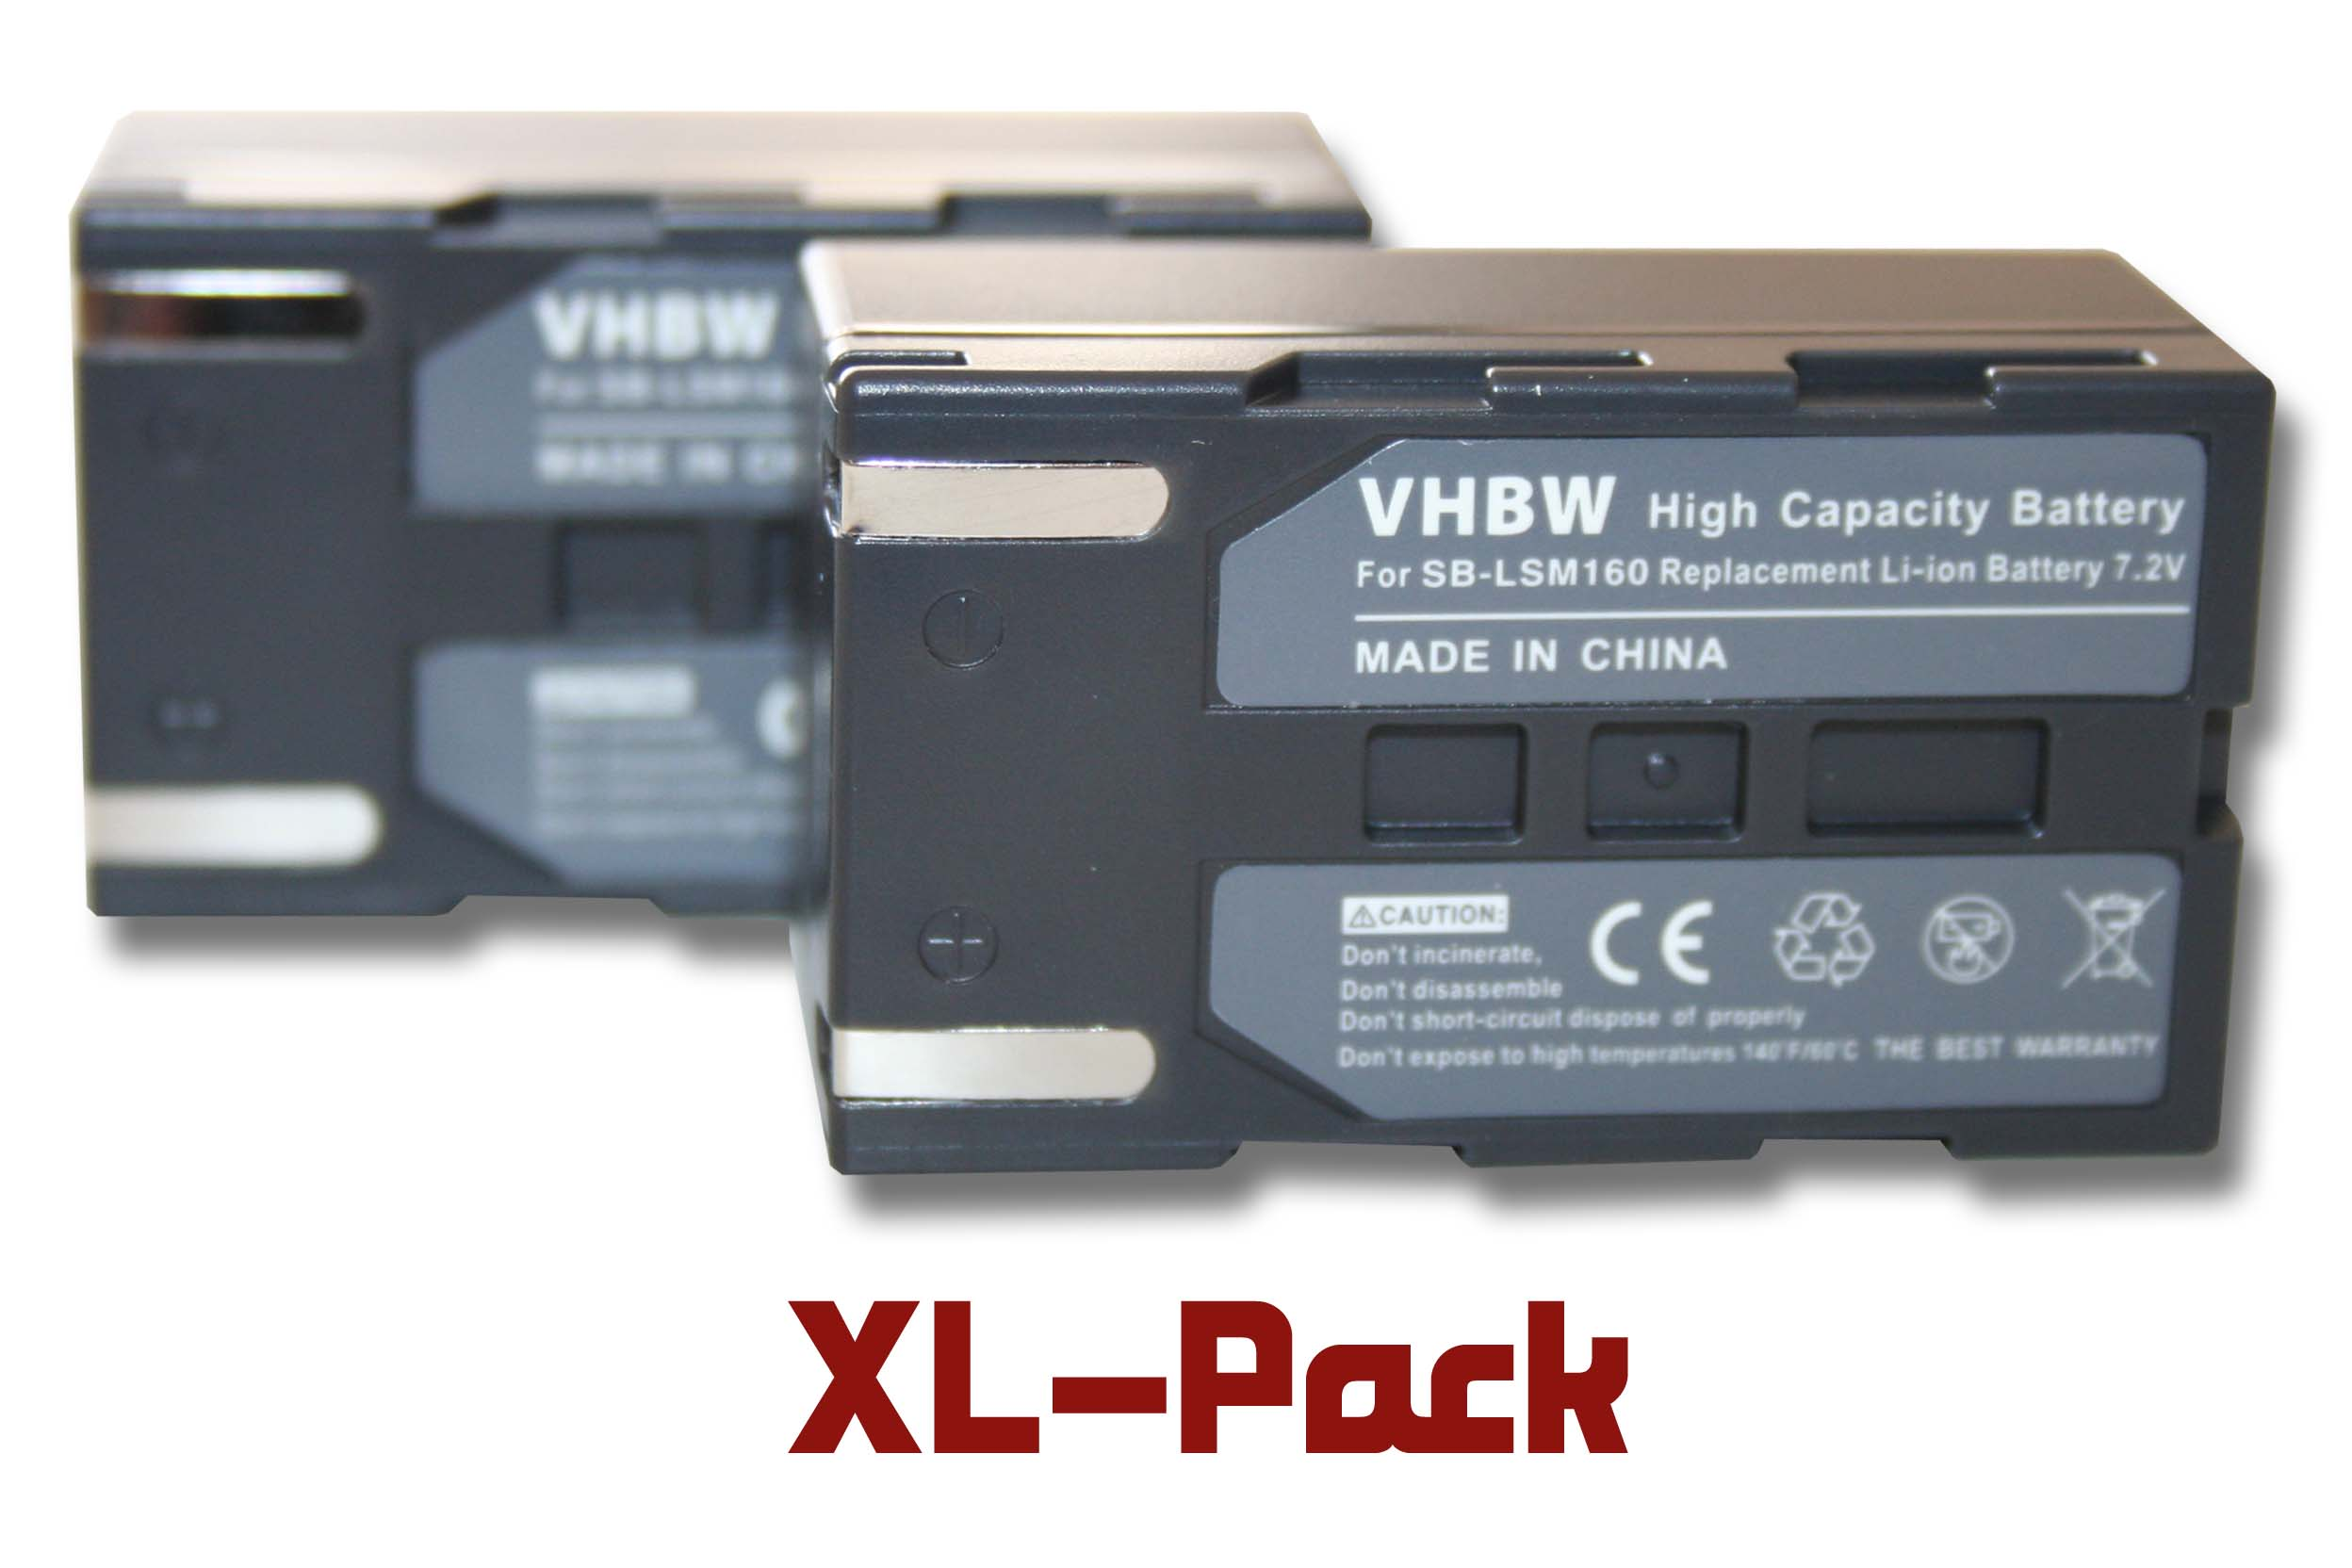 VHBW kompatibel mit Akku Videokamera, Samsung VP-DC165W, VP-DC171, VP-DC161W, 7.2 VP-DC163, Volt, - VP-DC563 VP-DC171W, 1200 Li-Ion